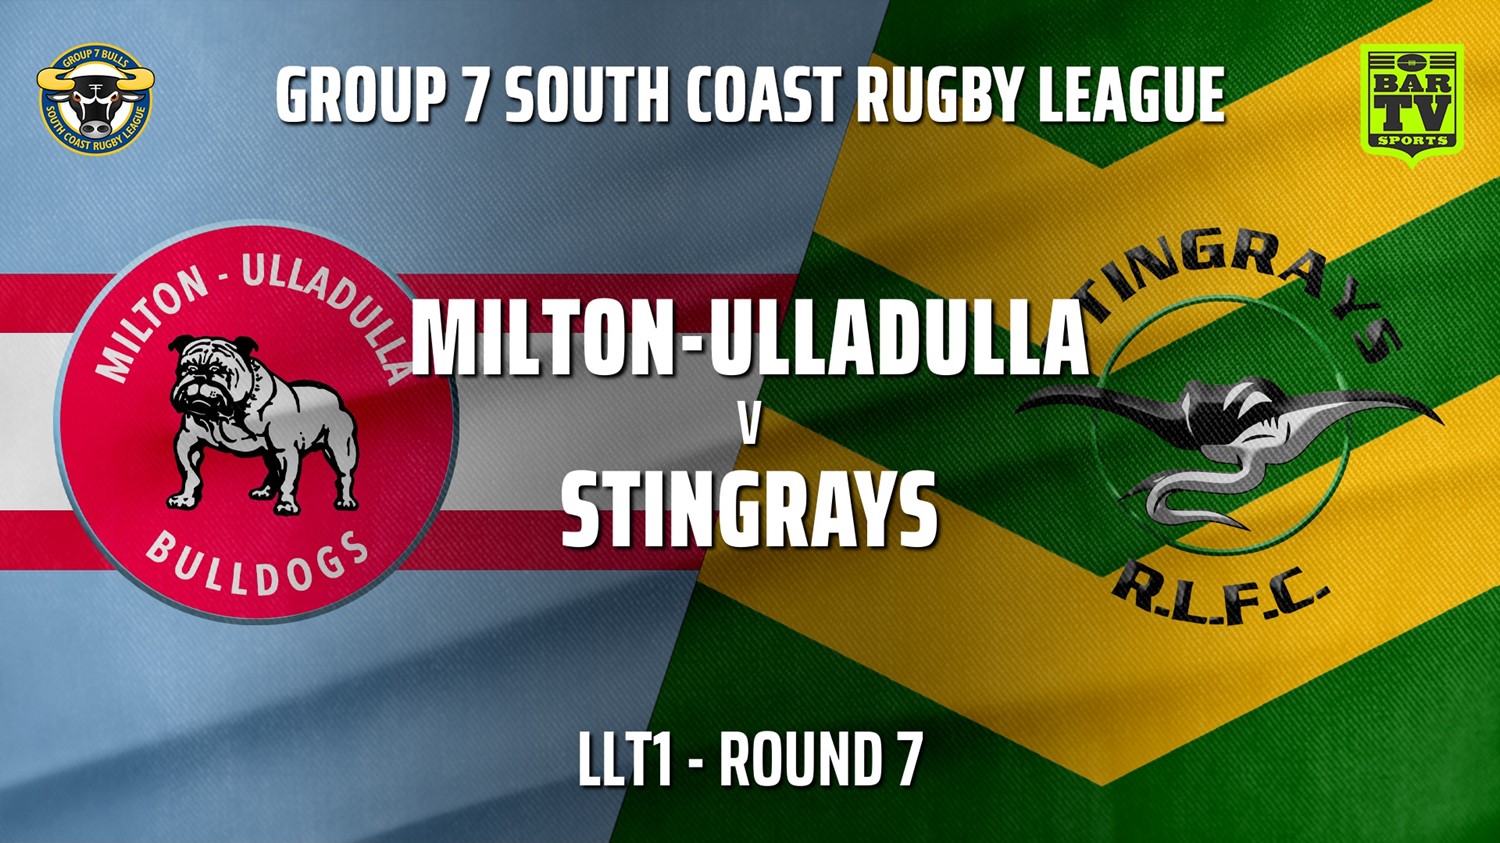 210530-Group 7 RL Round 7 - LLT1 - Milton-Ulladulla Bulldogs v Stingrays of Shellharbour Slate Image